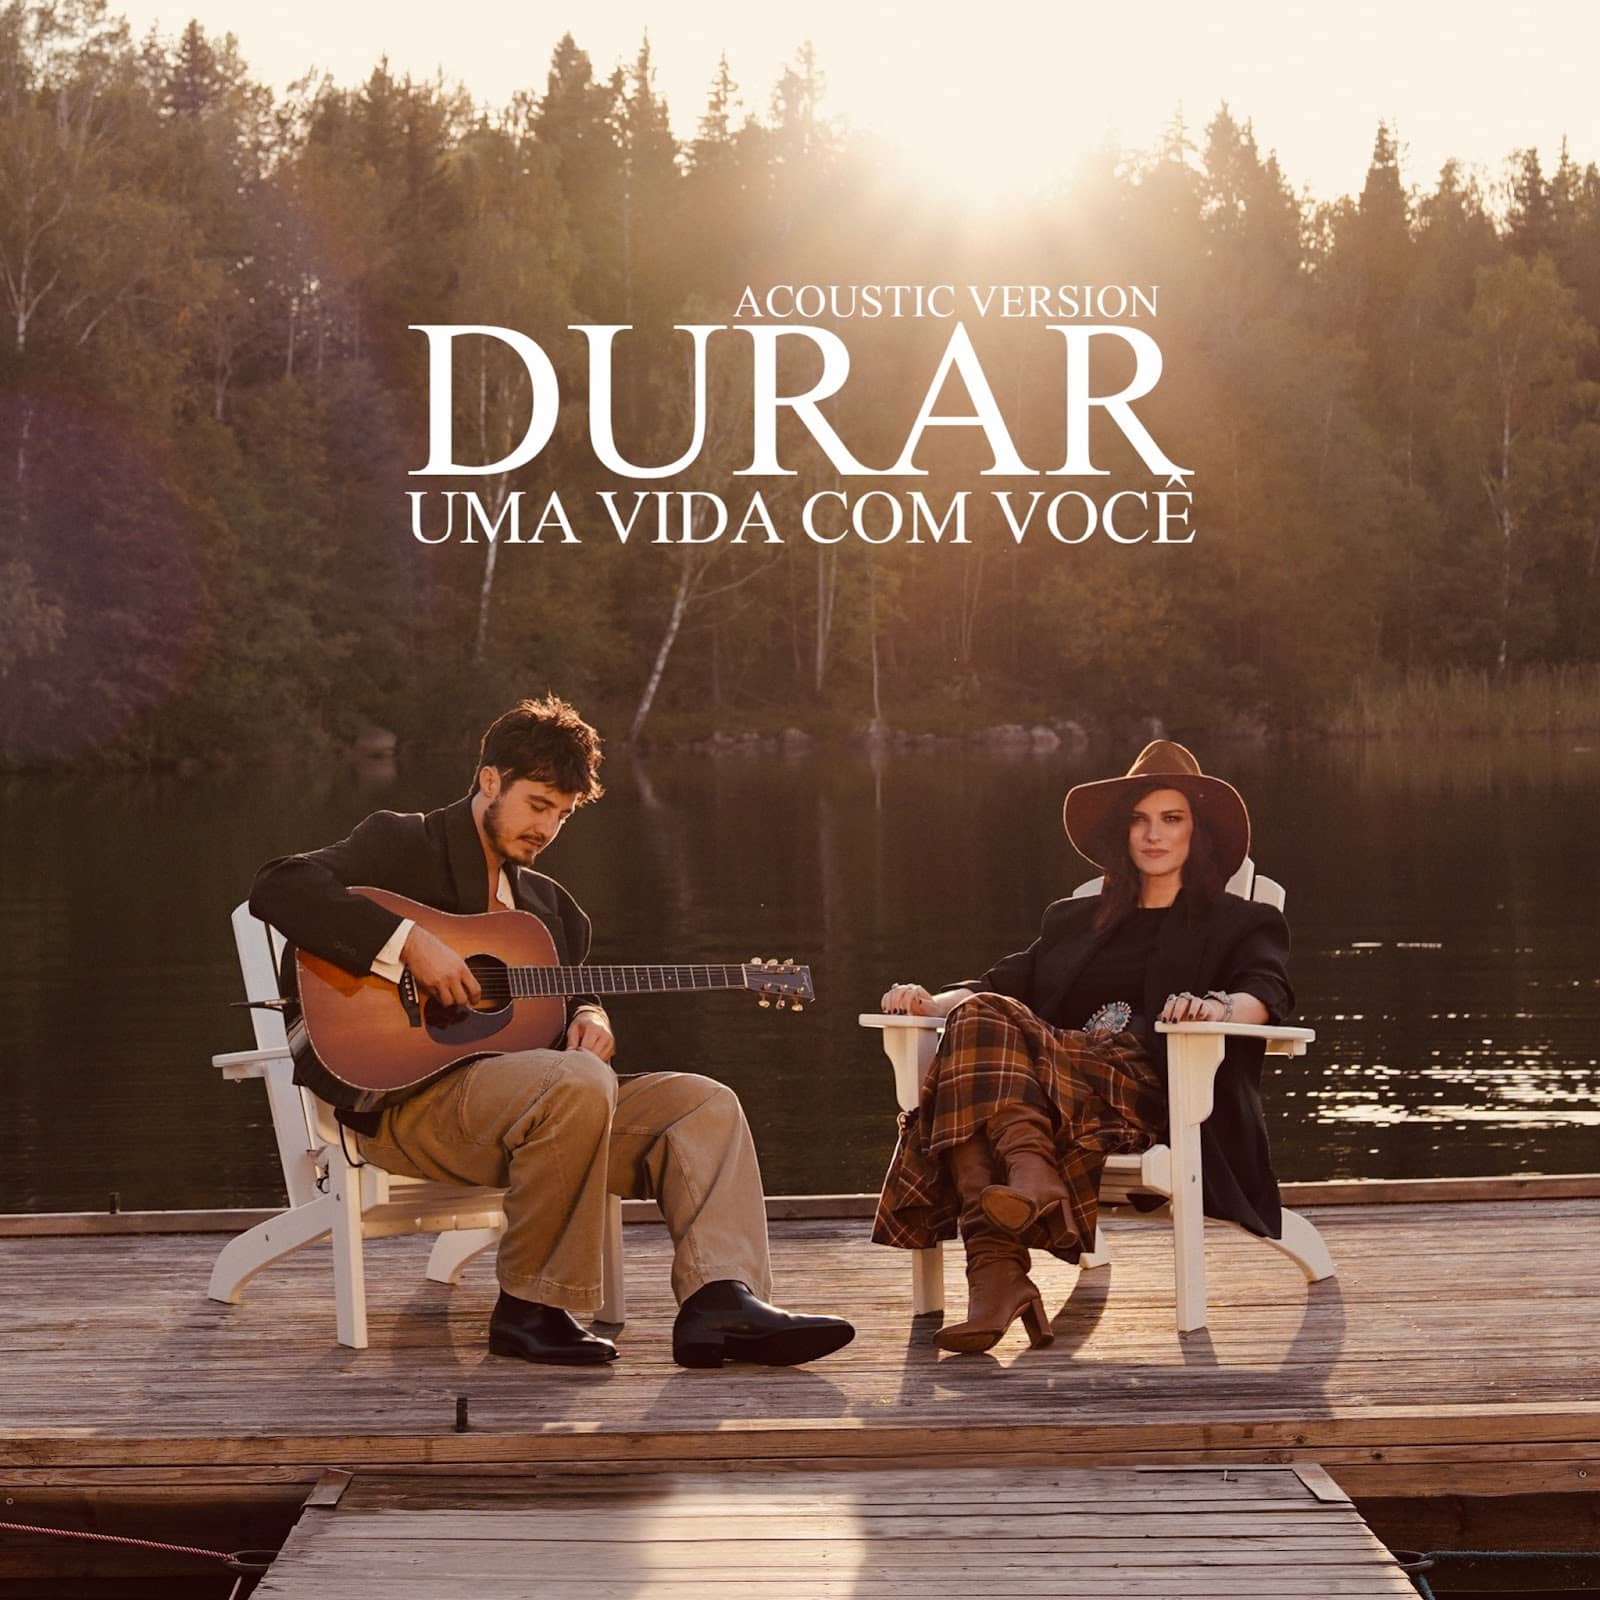 revistaprosaversoearte.com - Dueto de Laura Pausini e Tiago Iorc na canção 'Durar', em versão acústica